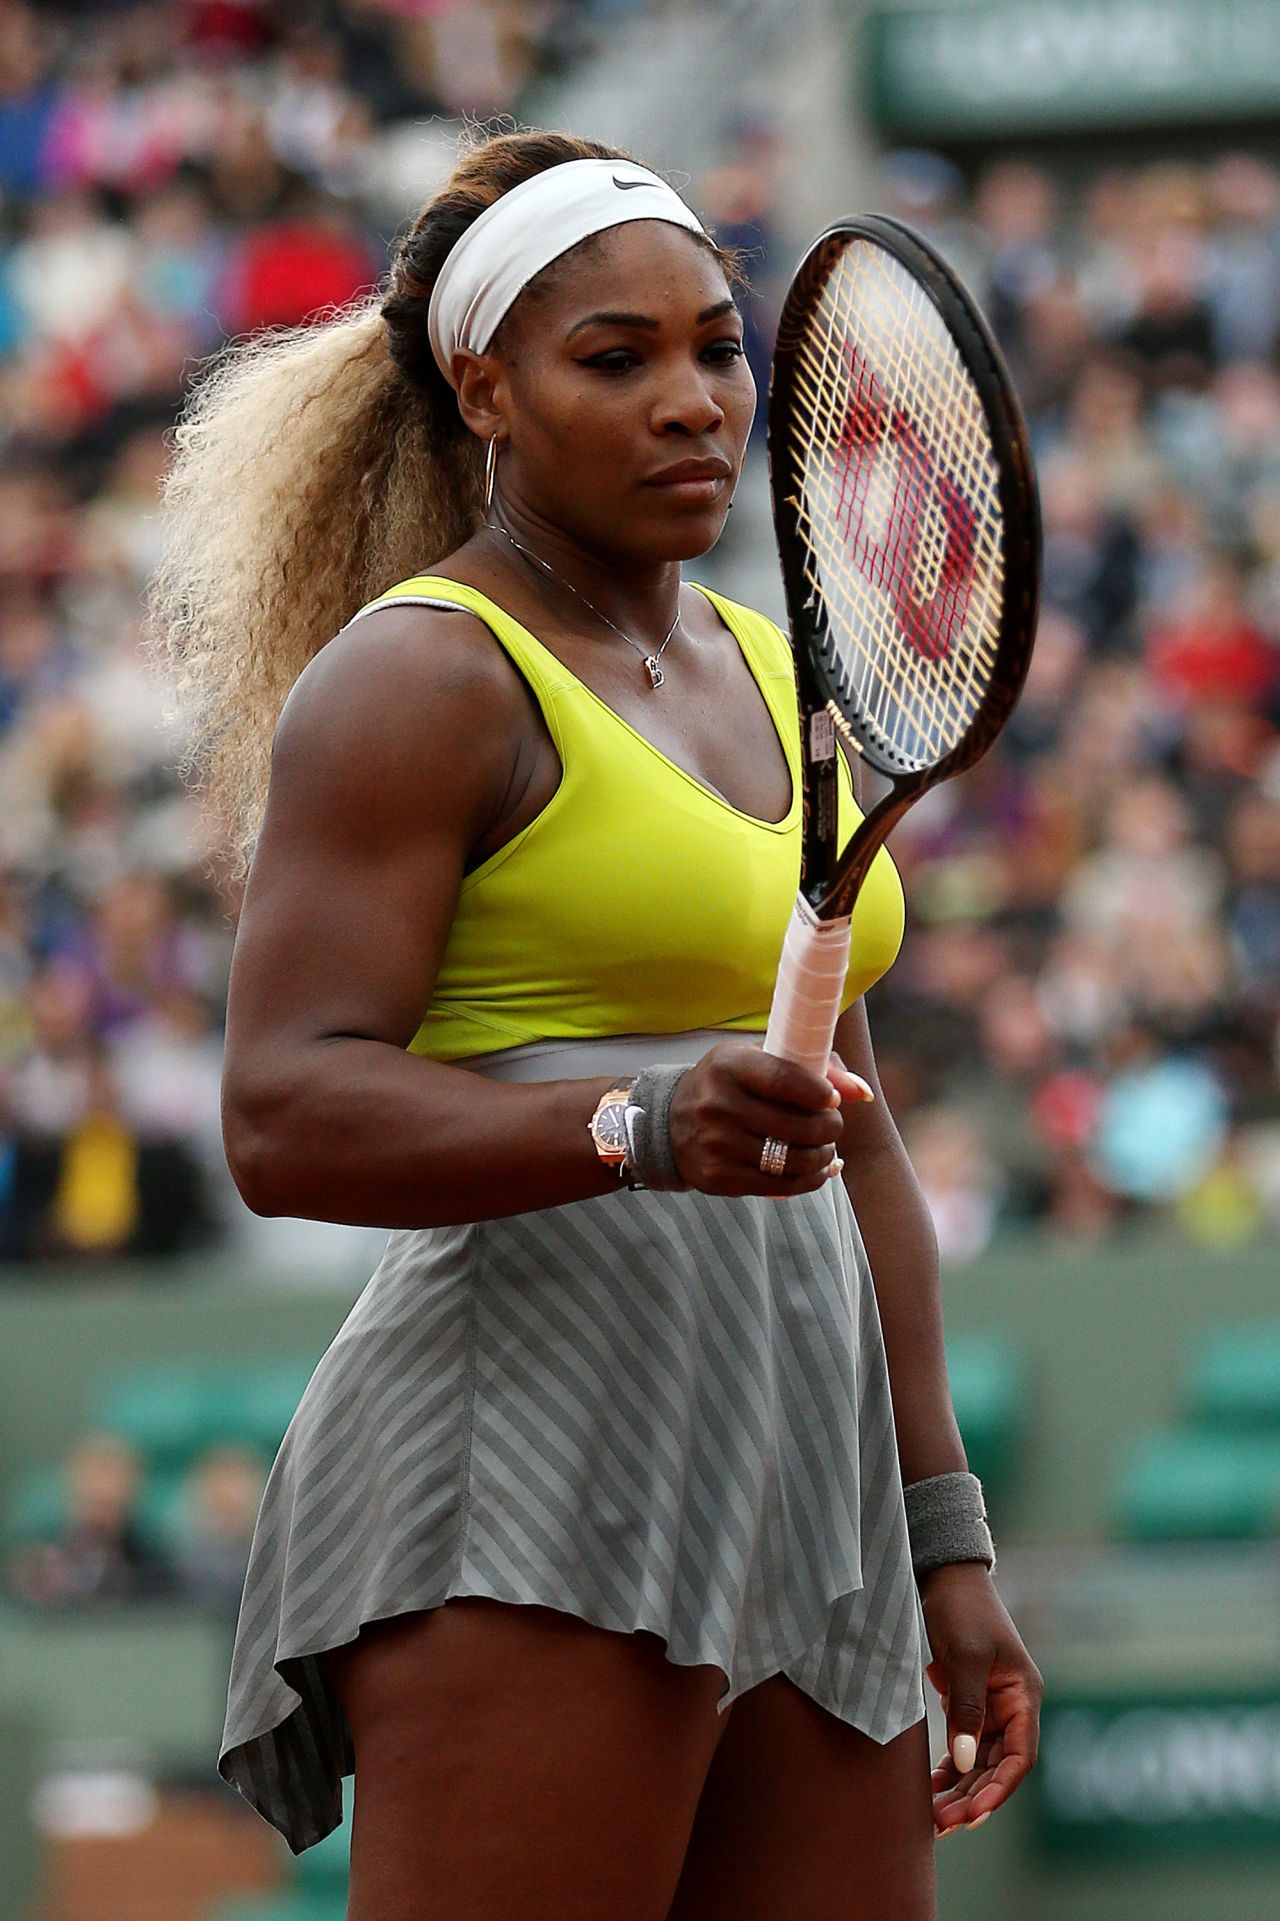 Serena Williams - 2014 French Open at Roland Garros – 2nd Round1280 x 1921